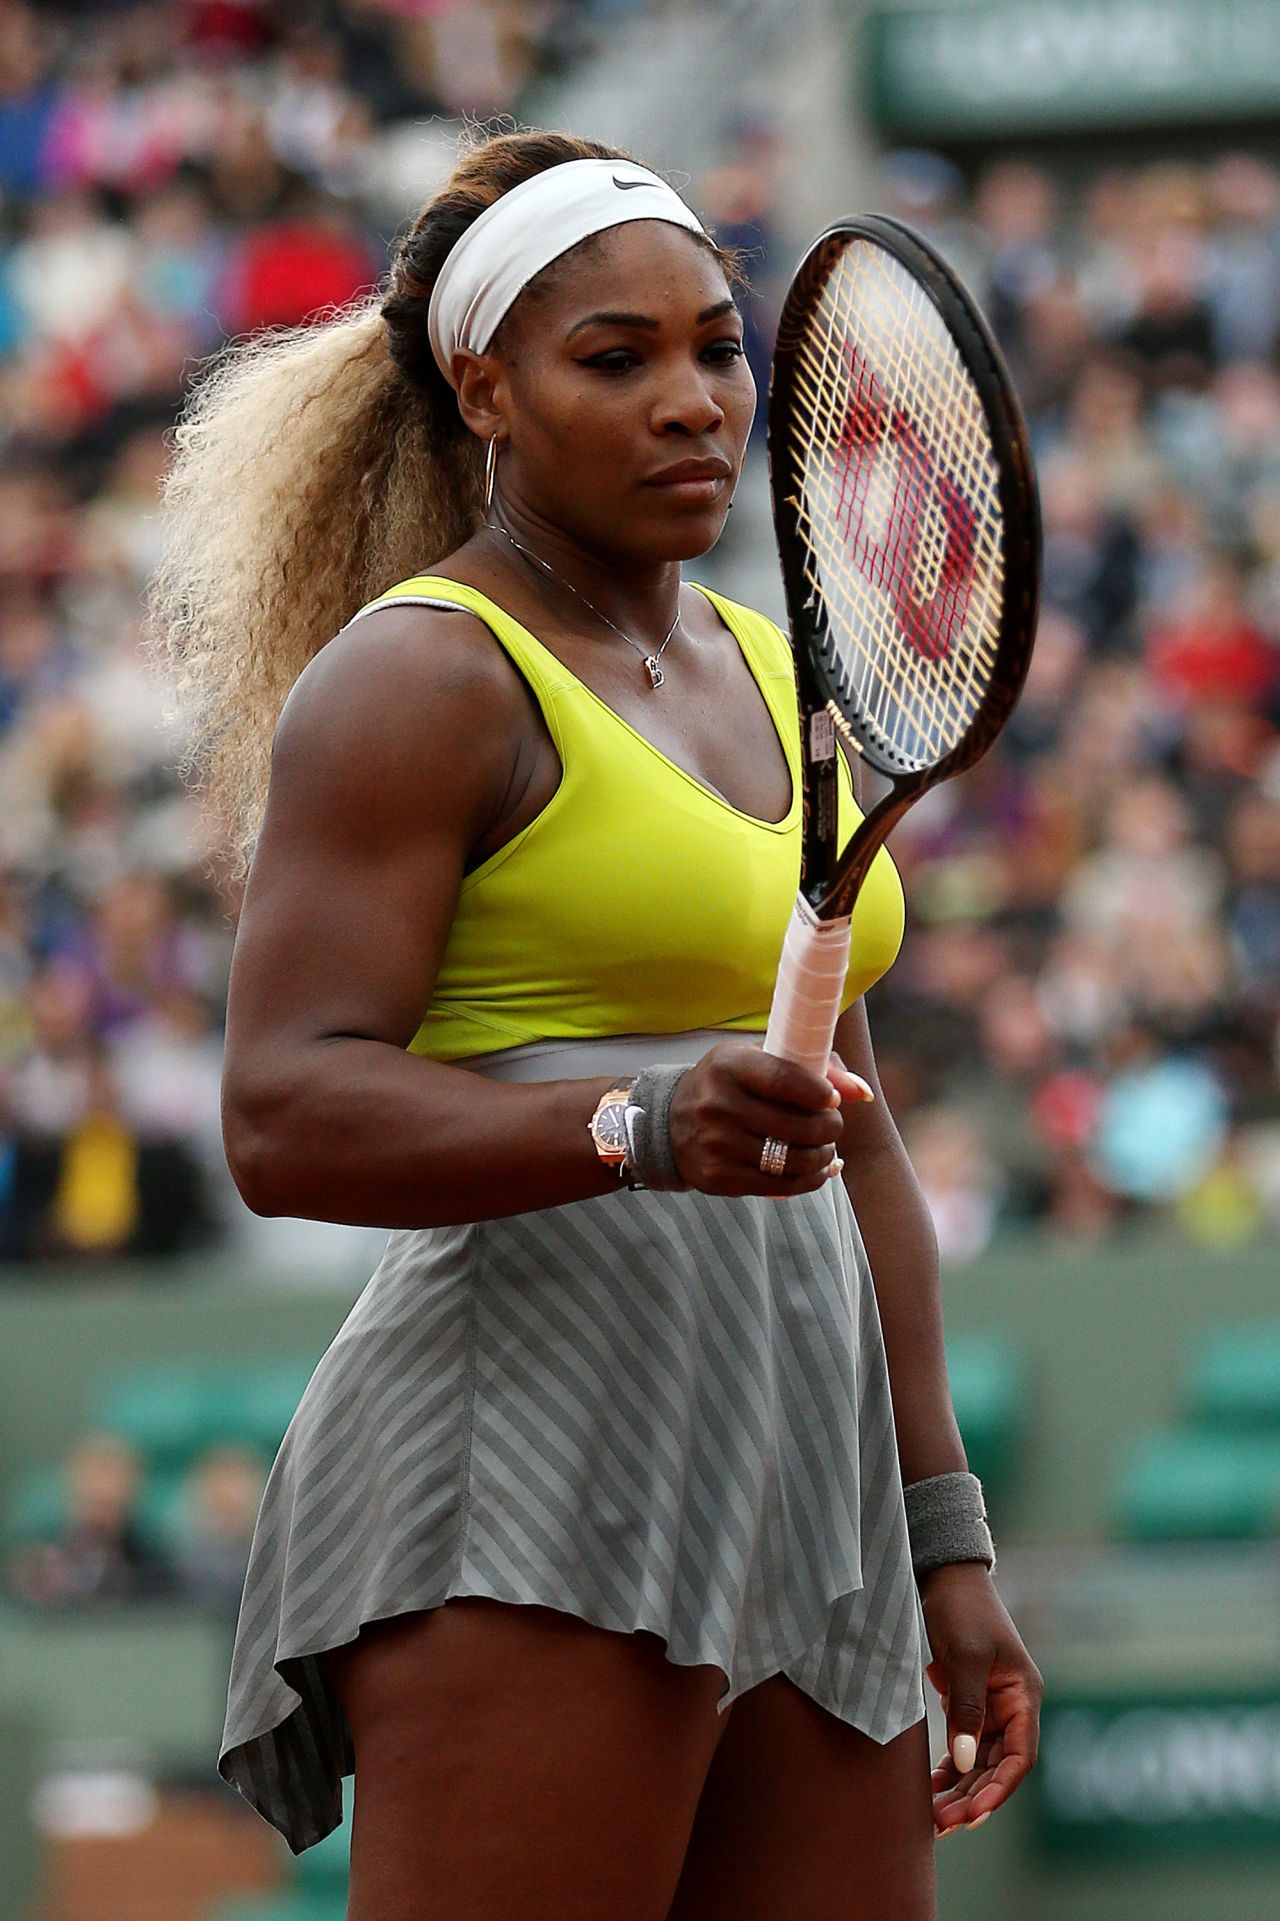 Serena Williams - 2014 French Open at Roland Garros – 2nd Round1280 x 1921